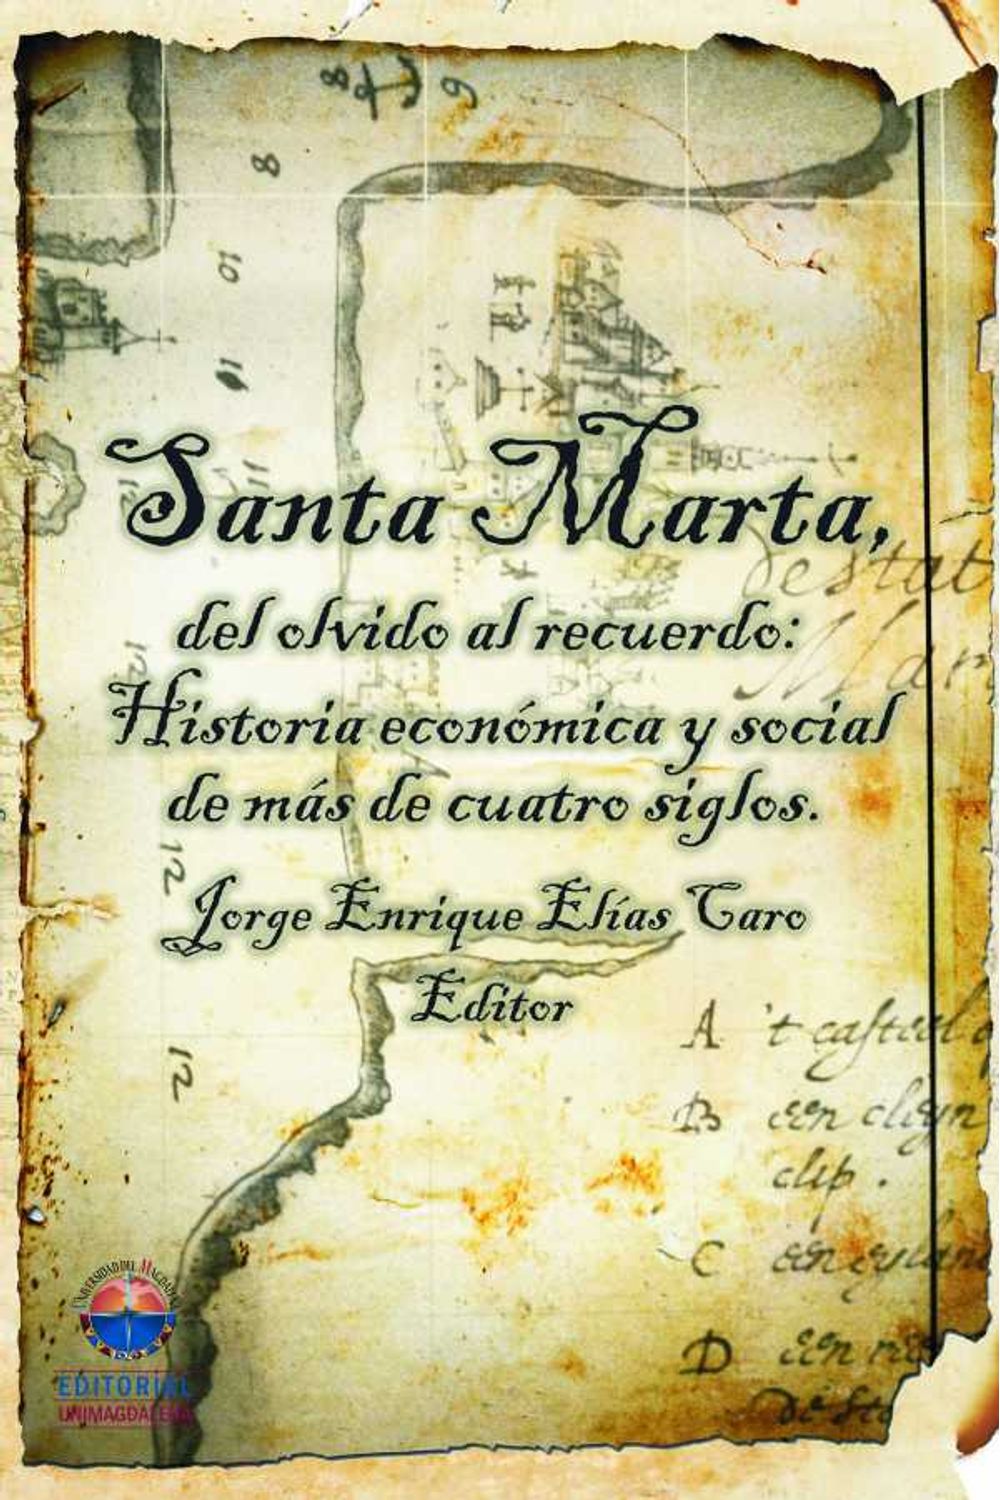 bw-santa-marta-del-olvido-al-recuerdo-historia-econoacutemica-y-social-de-maacutes-de-cuatro-siglos-editorial-unimagdalena-9789587460087